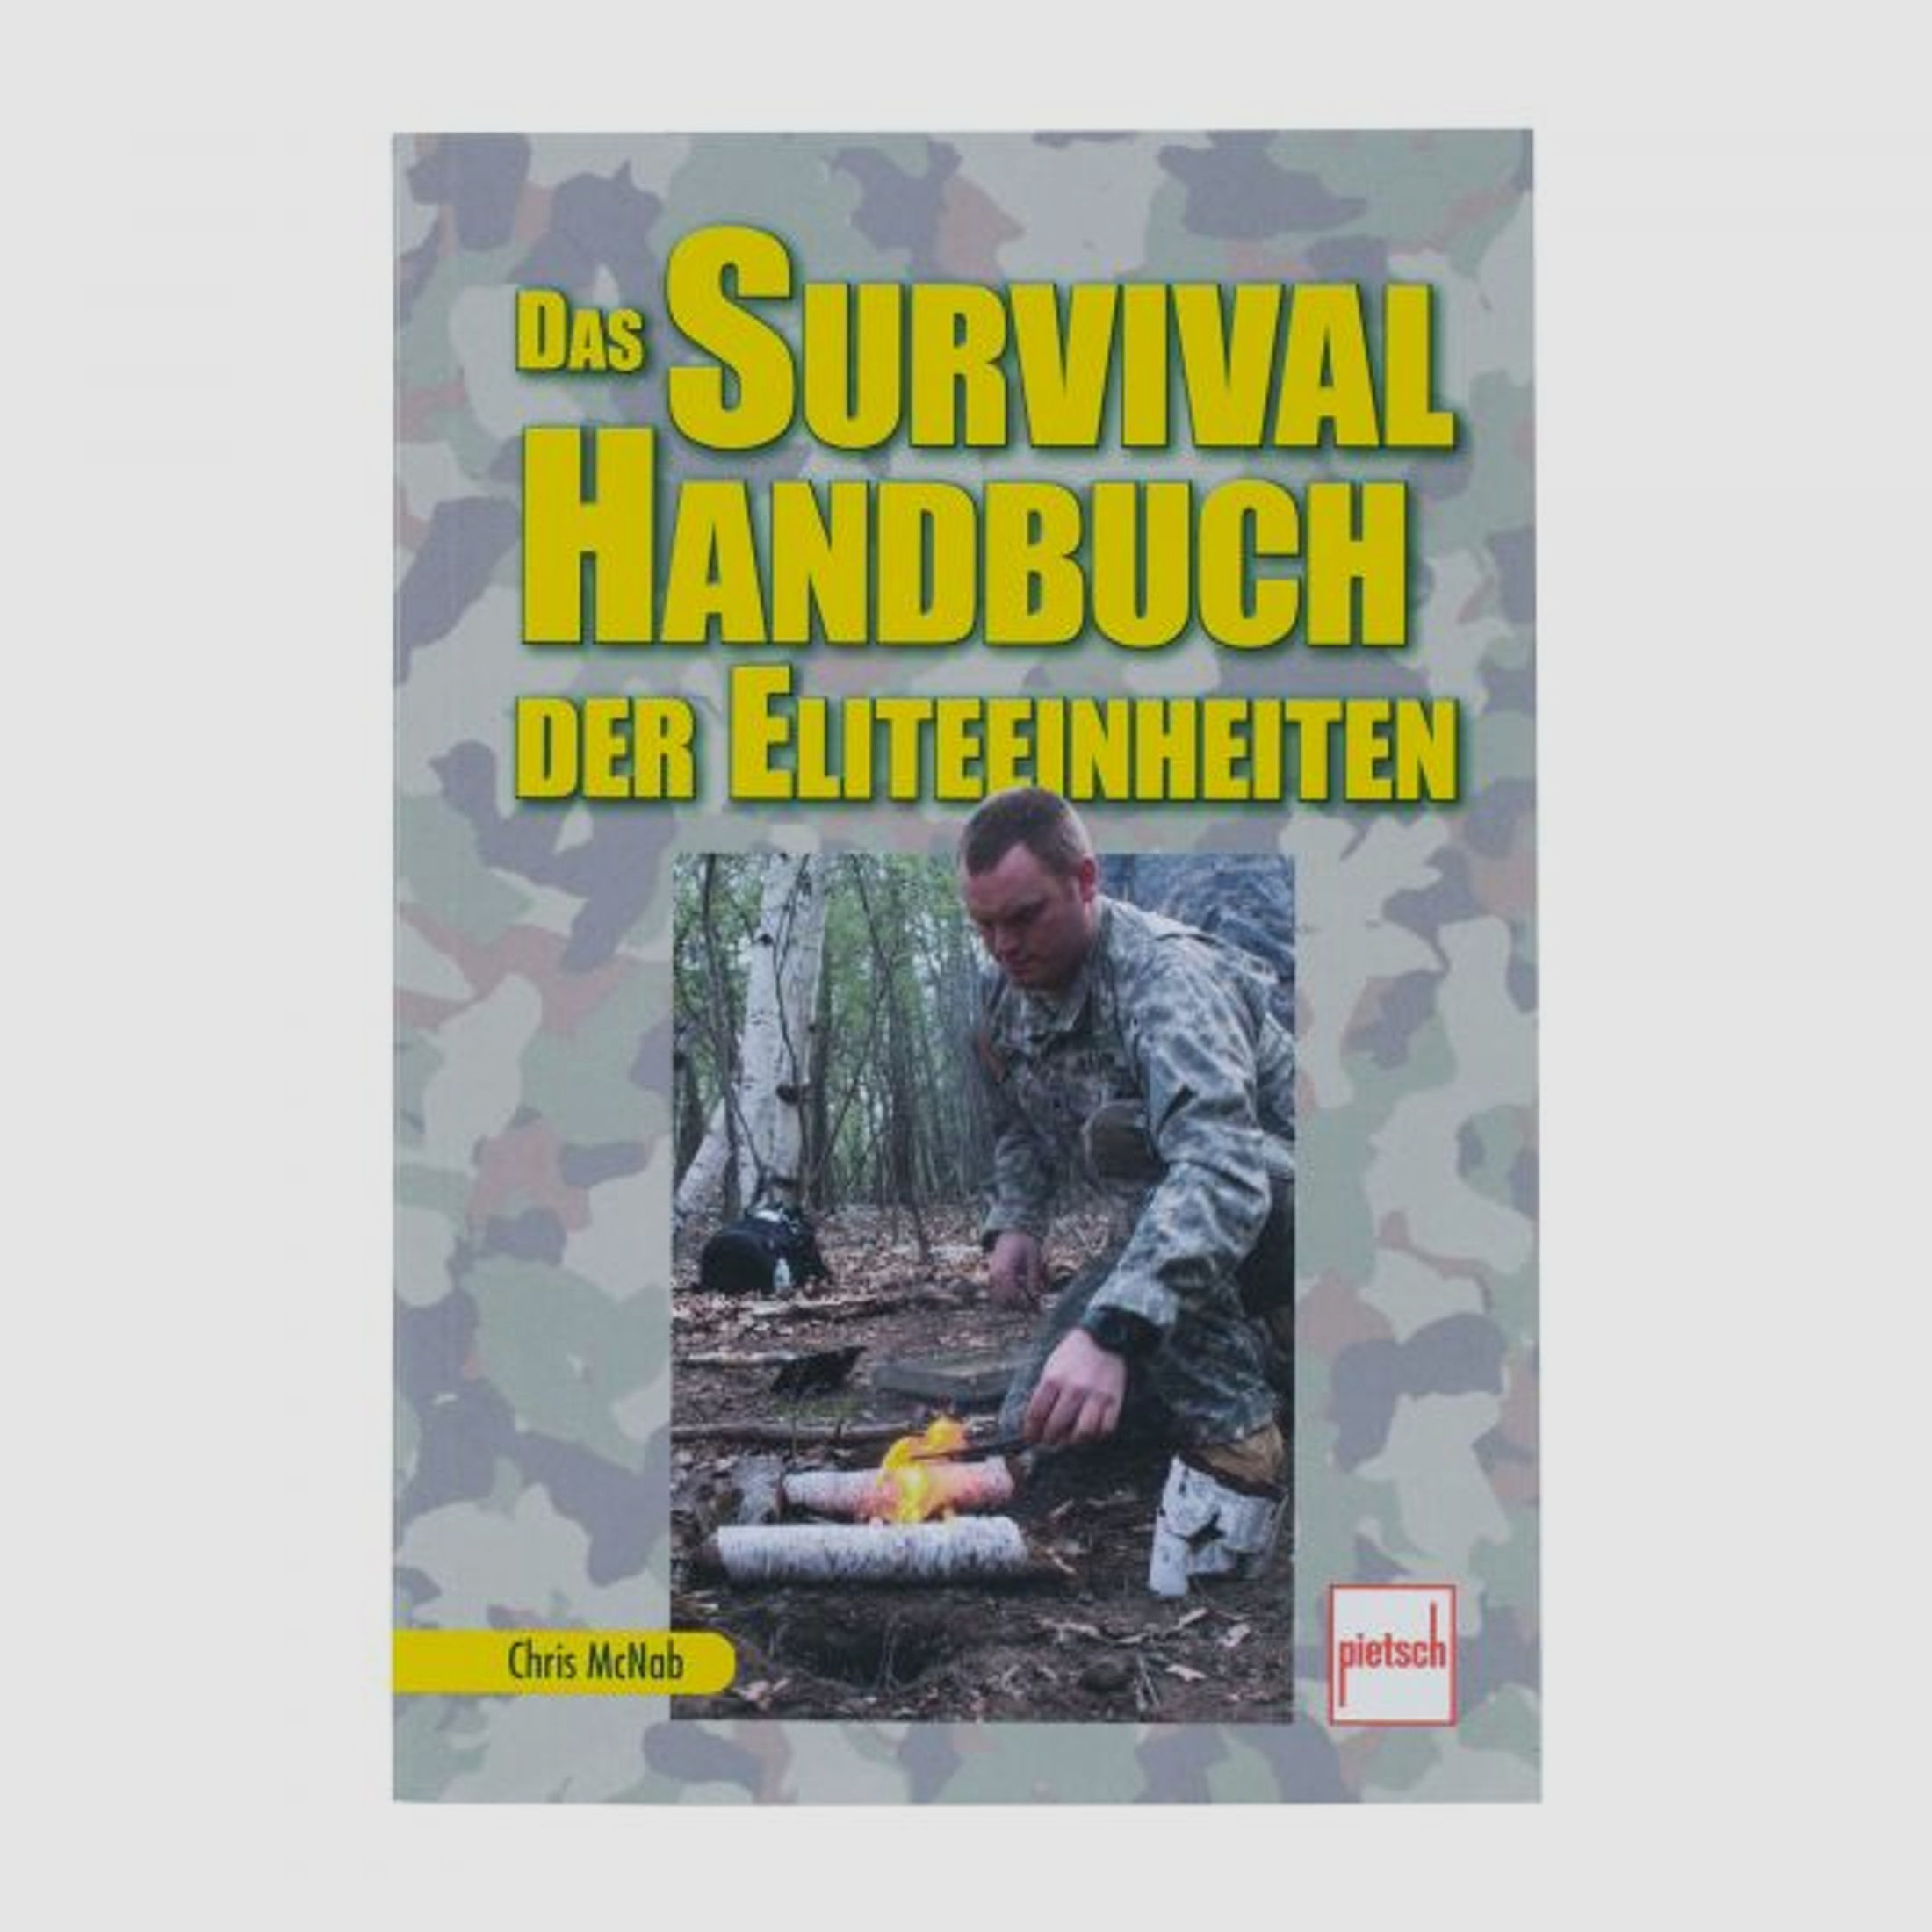 Pietsch Verlag Buch Das Survival Handbuch der Eliteeinheiten Neuauflage